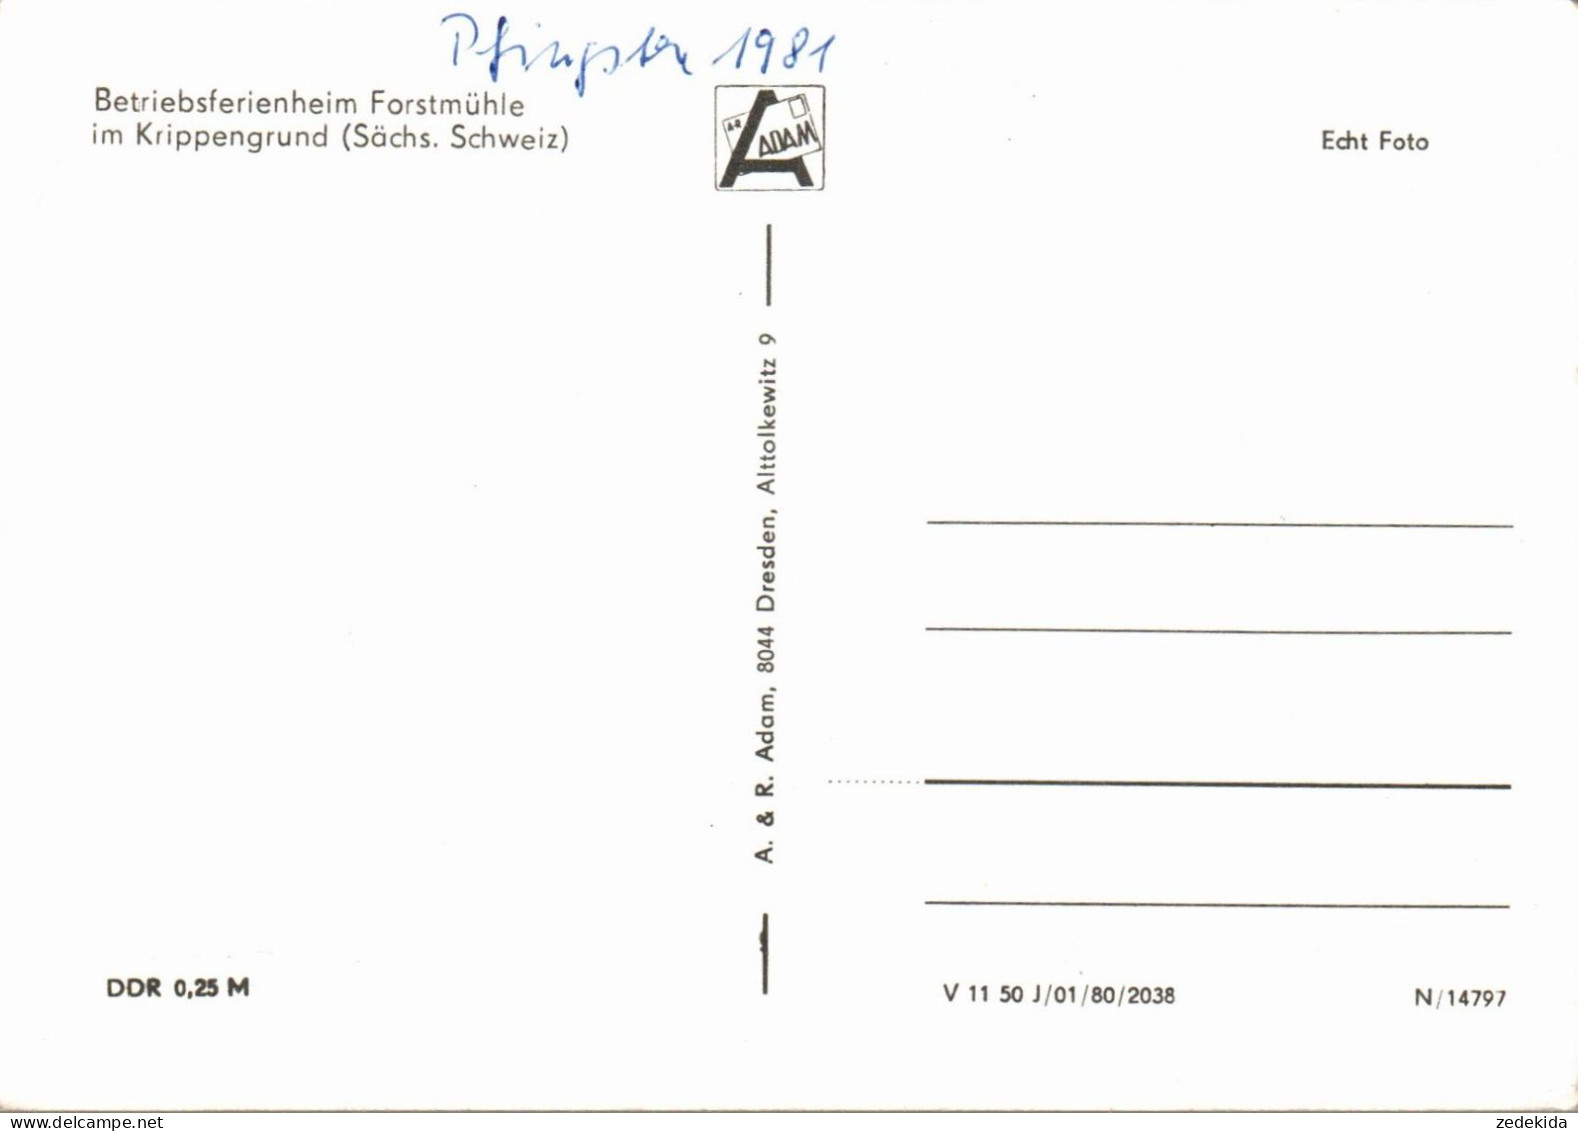 G7193 - Krippen Krippengrund - Betriebsferienheim Forstmühle - Verlag Adam - Hohnstein (Saechs. Schweiz)